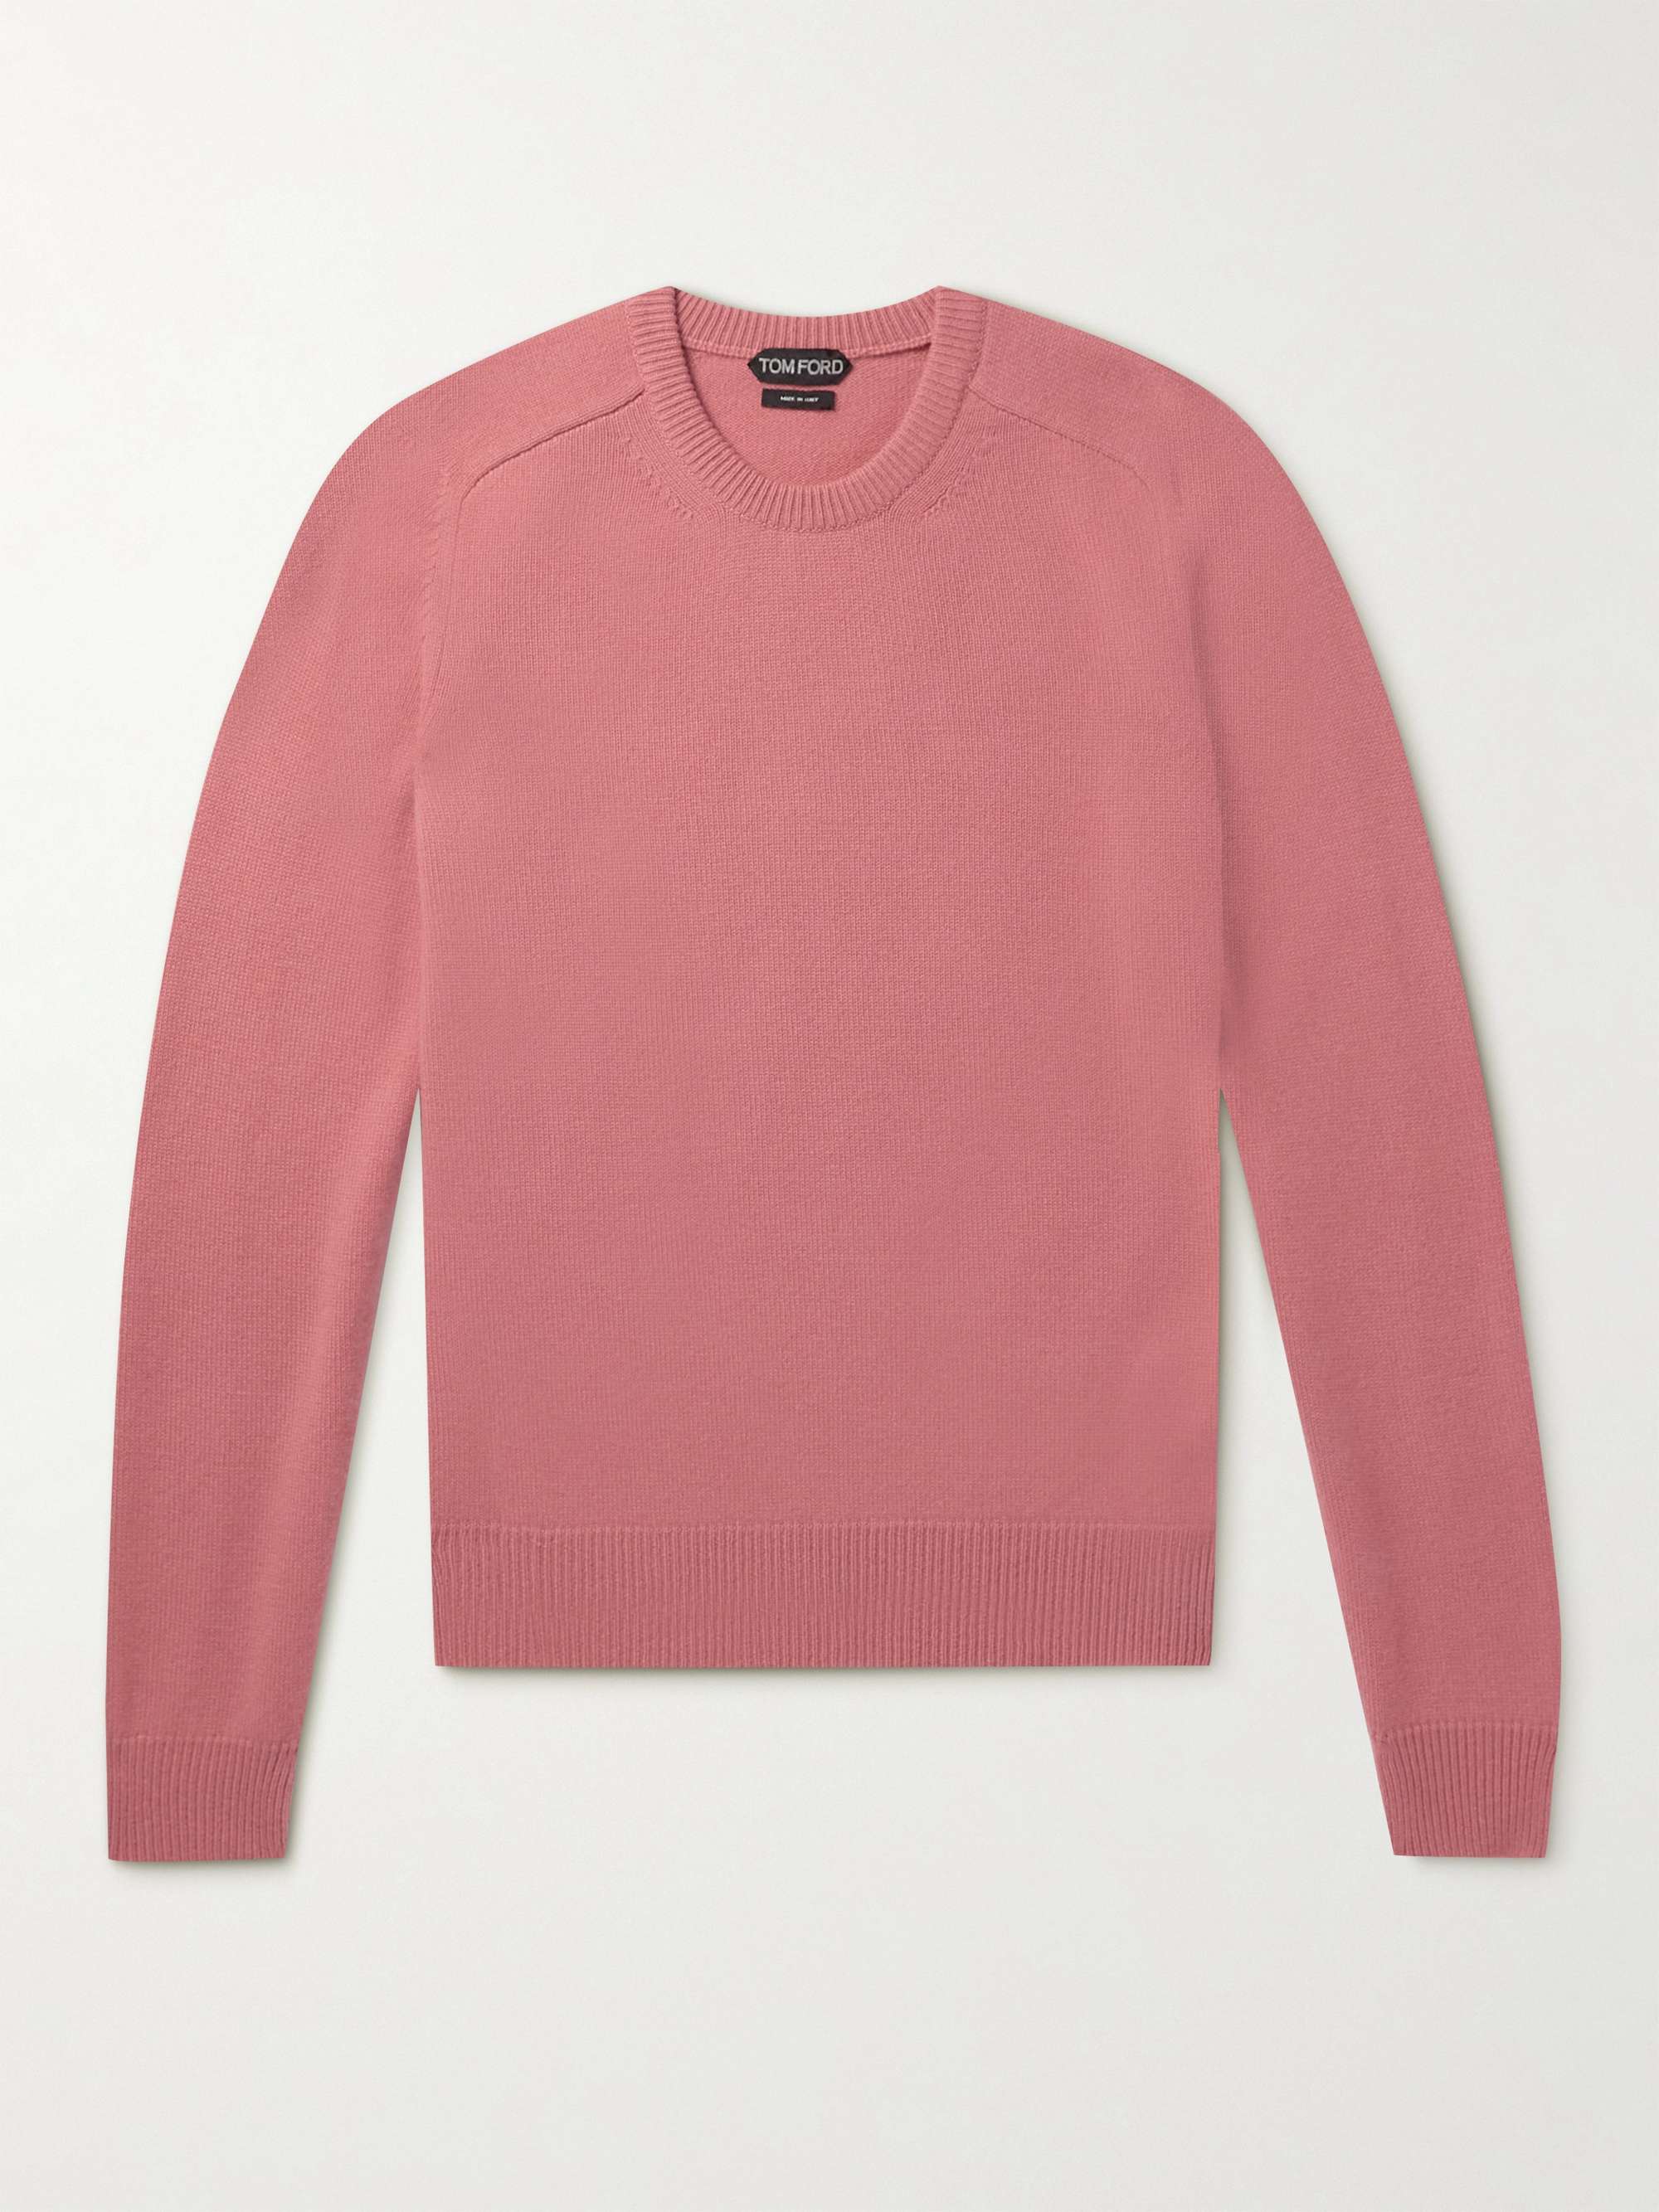 TOM FORD Slim-Fit Cashmere Sweater for Men | MR PORTER